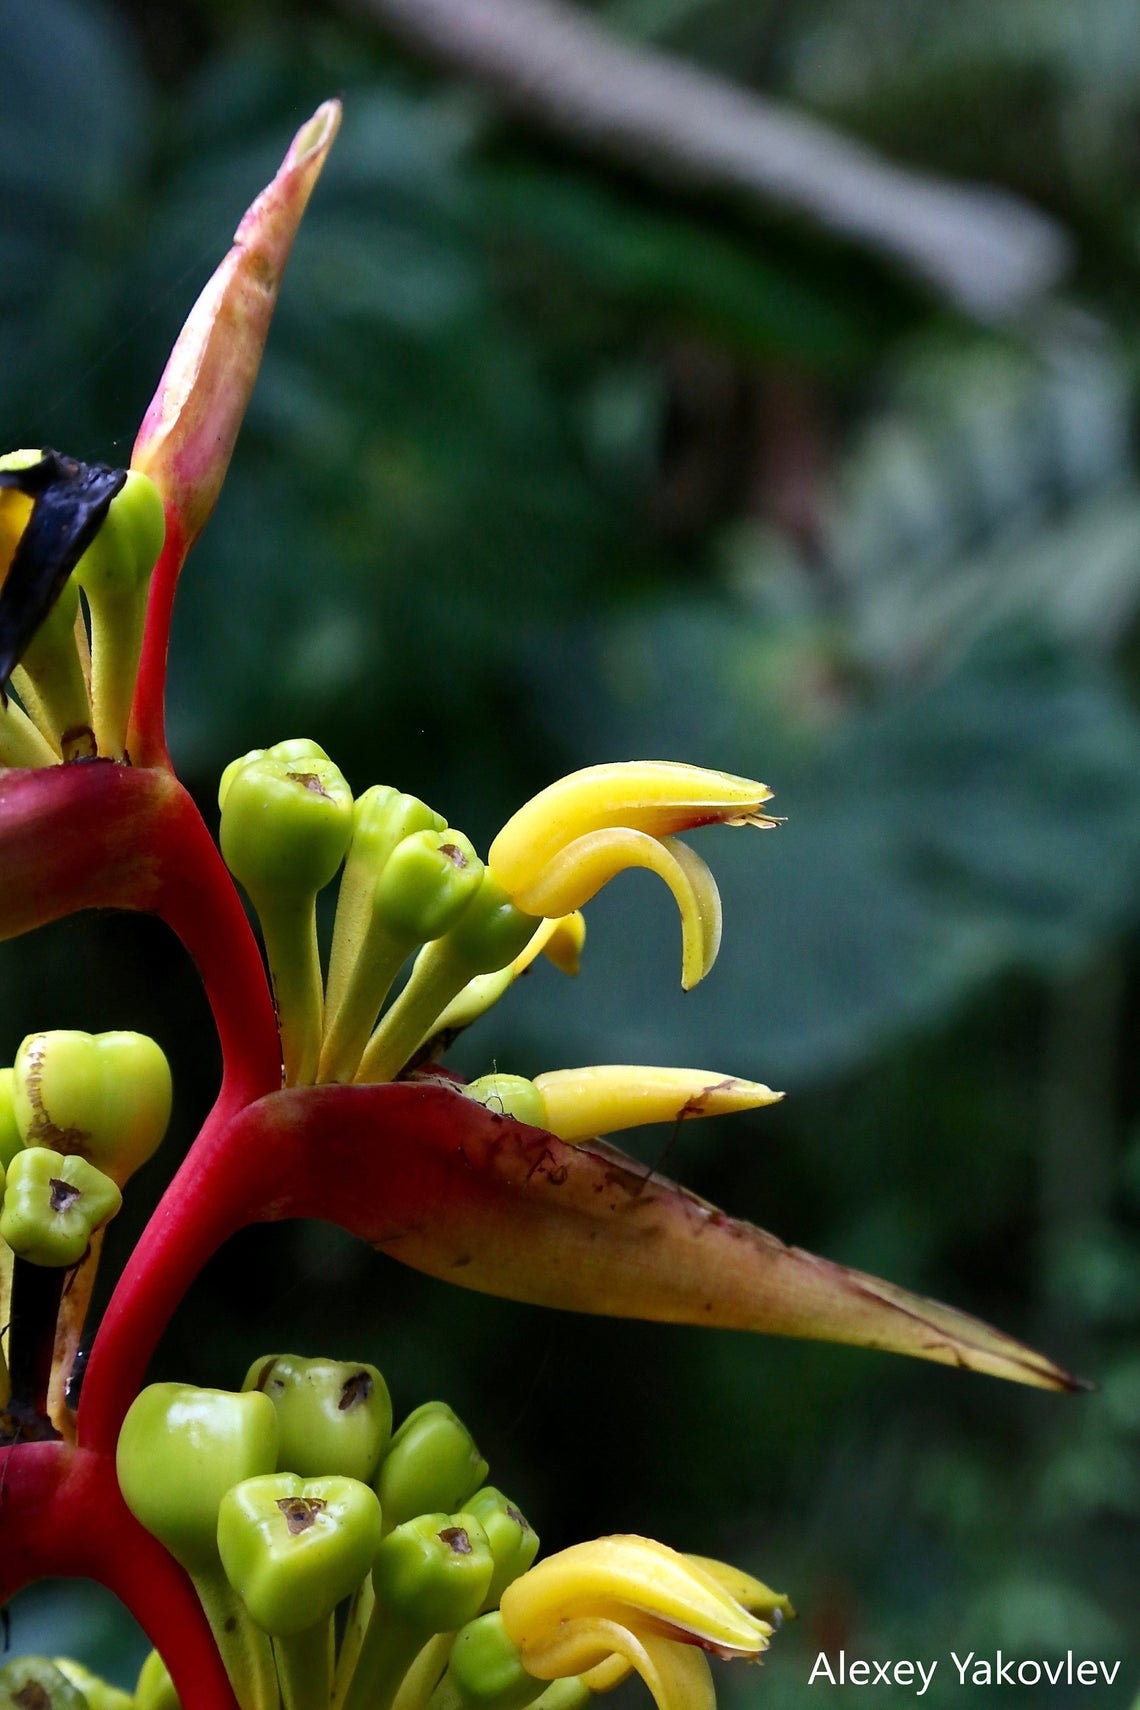 Heliconia Impudica - Equador Florestas Tropicais Heliconia - Raro - 5 Sementes